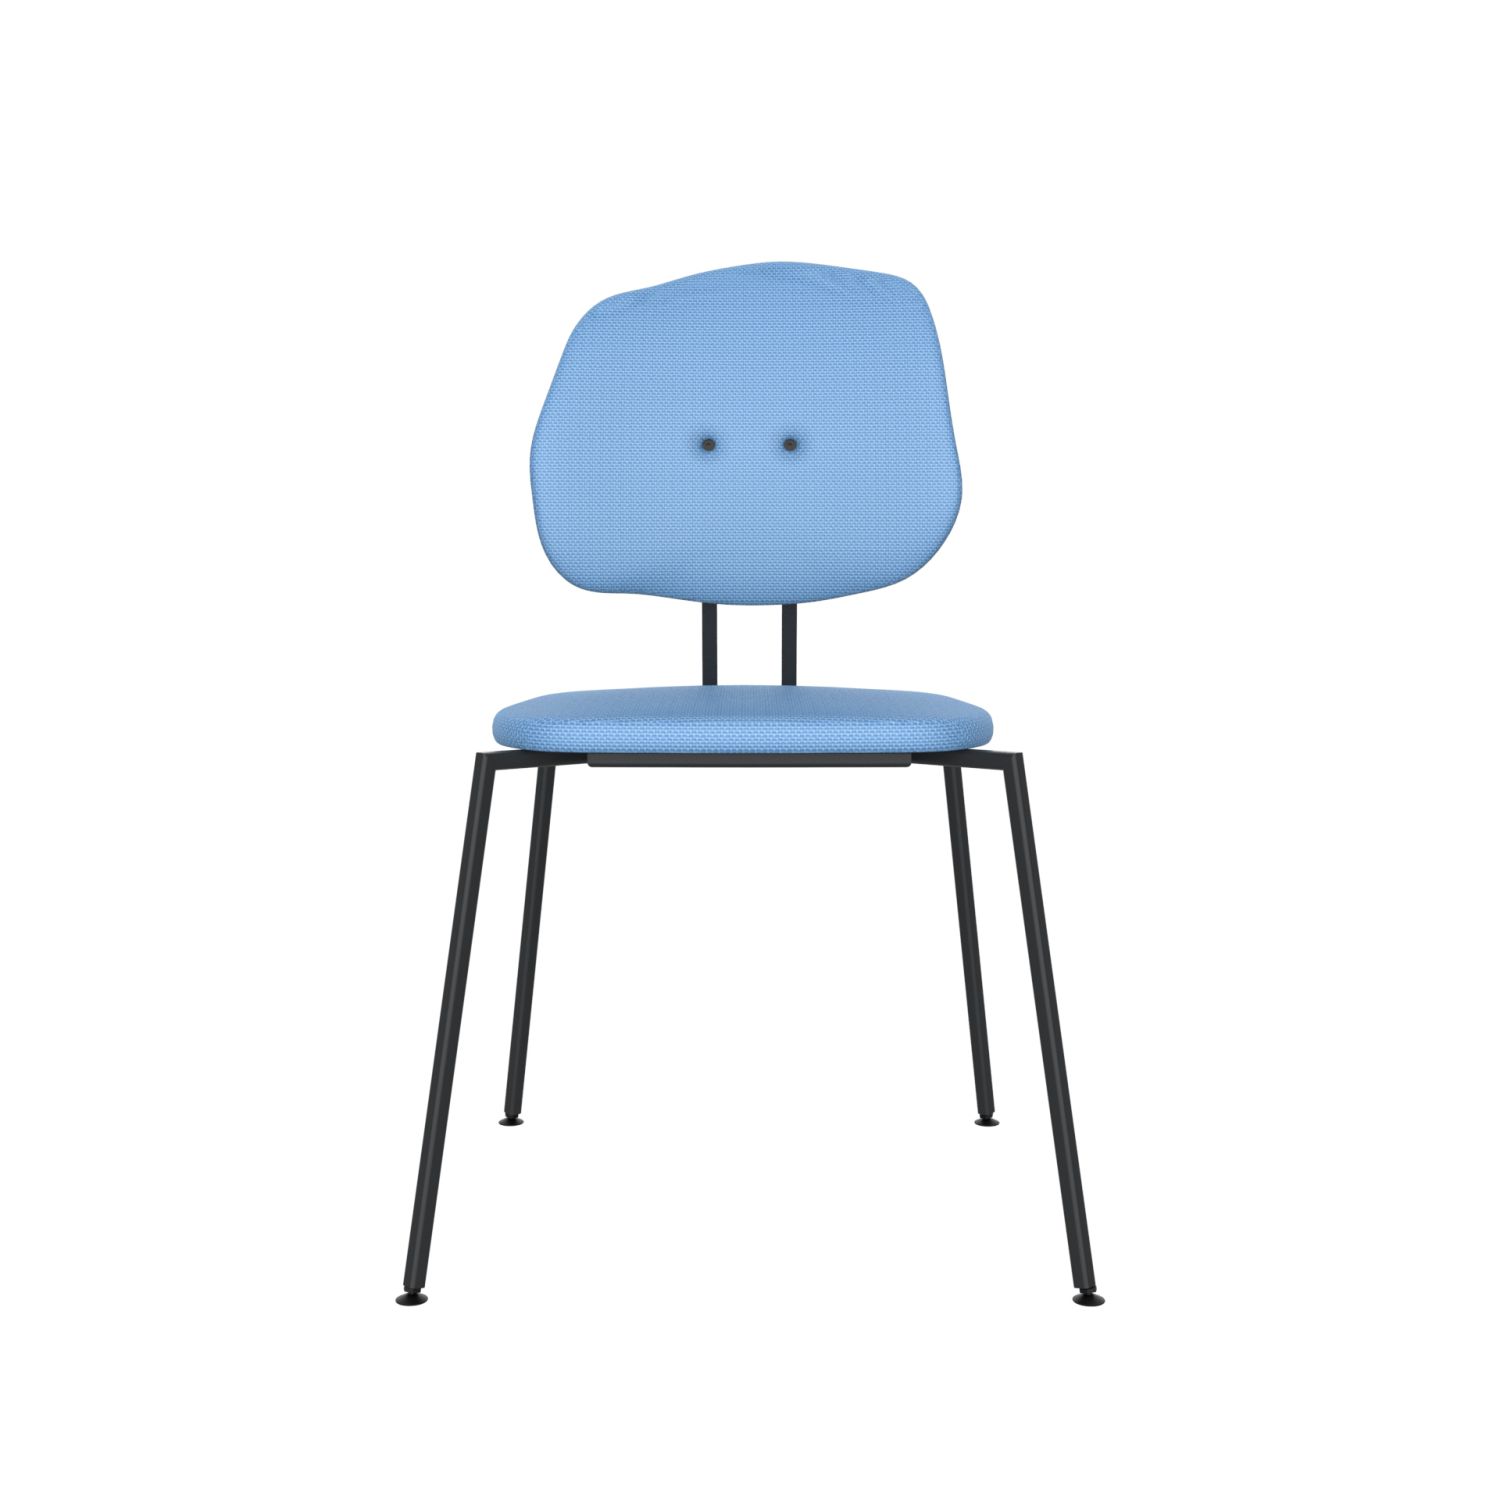 lensvelt maarten baas chair 141 stackable without armrests backrest g blue horizon 040 black ral9005 hard leg ends